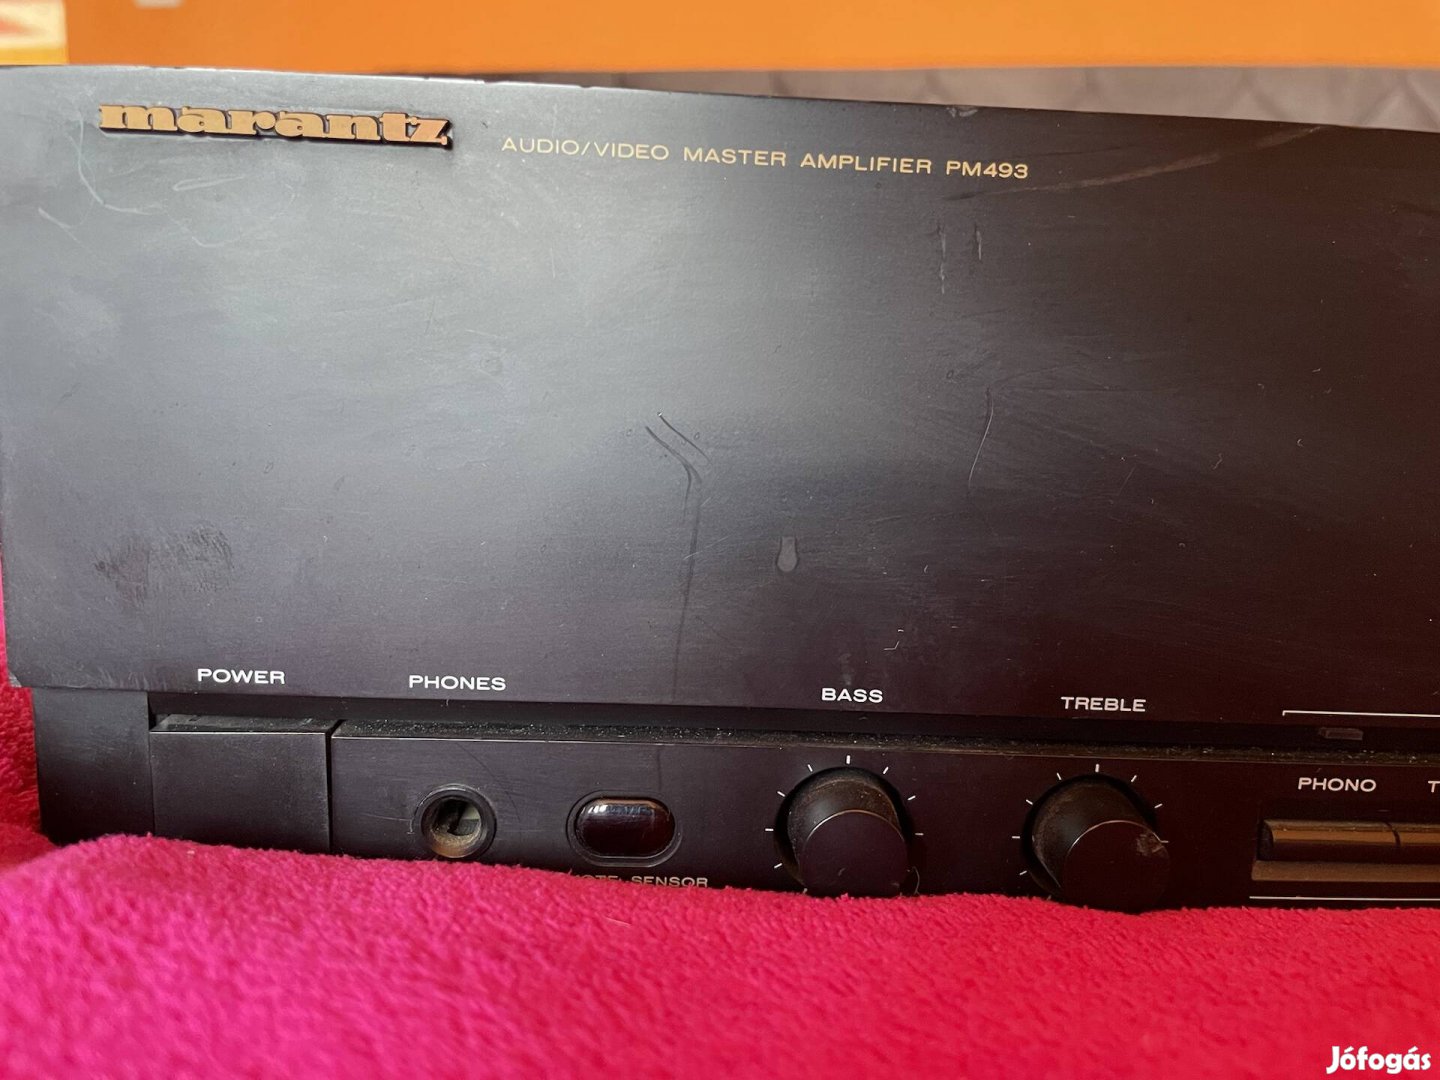 Marantz Audio/Video Master Amplifier PM493 erősítő